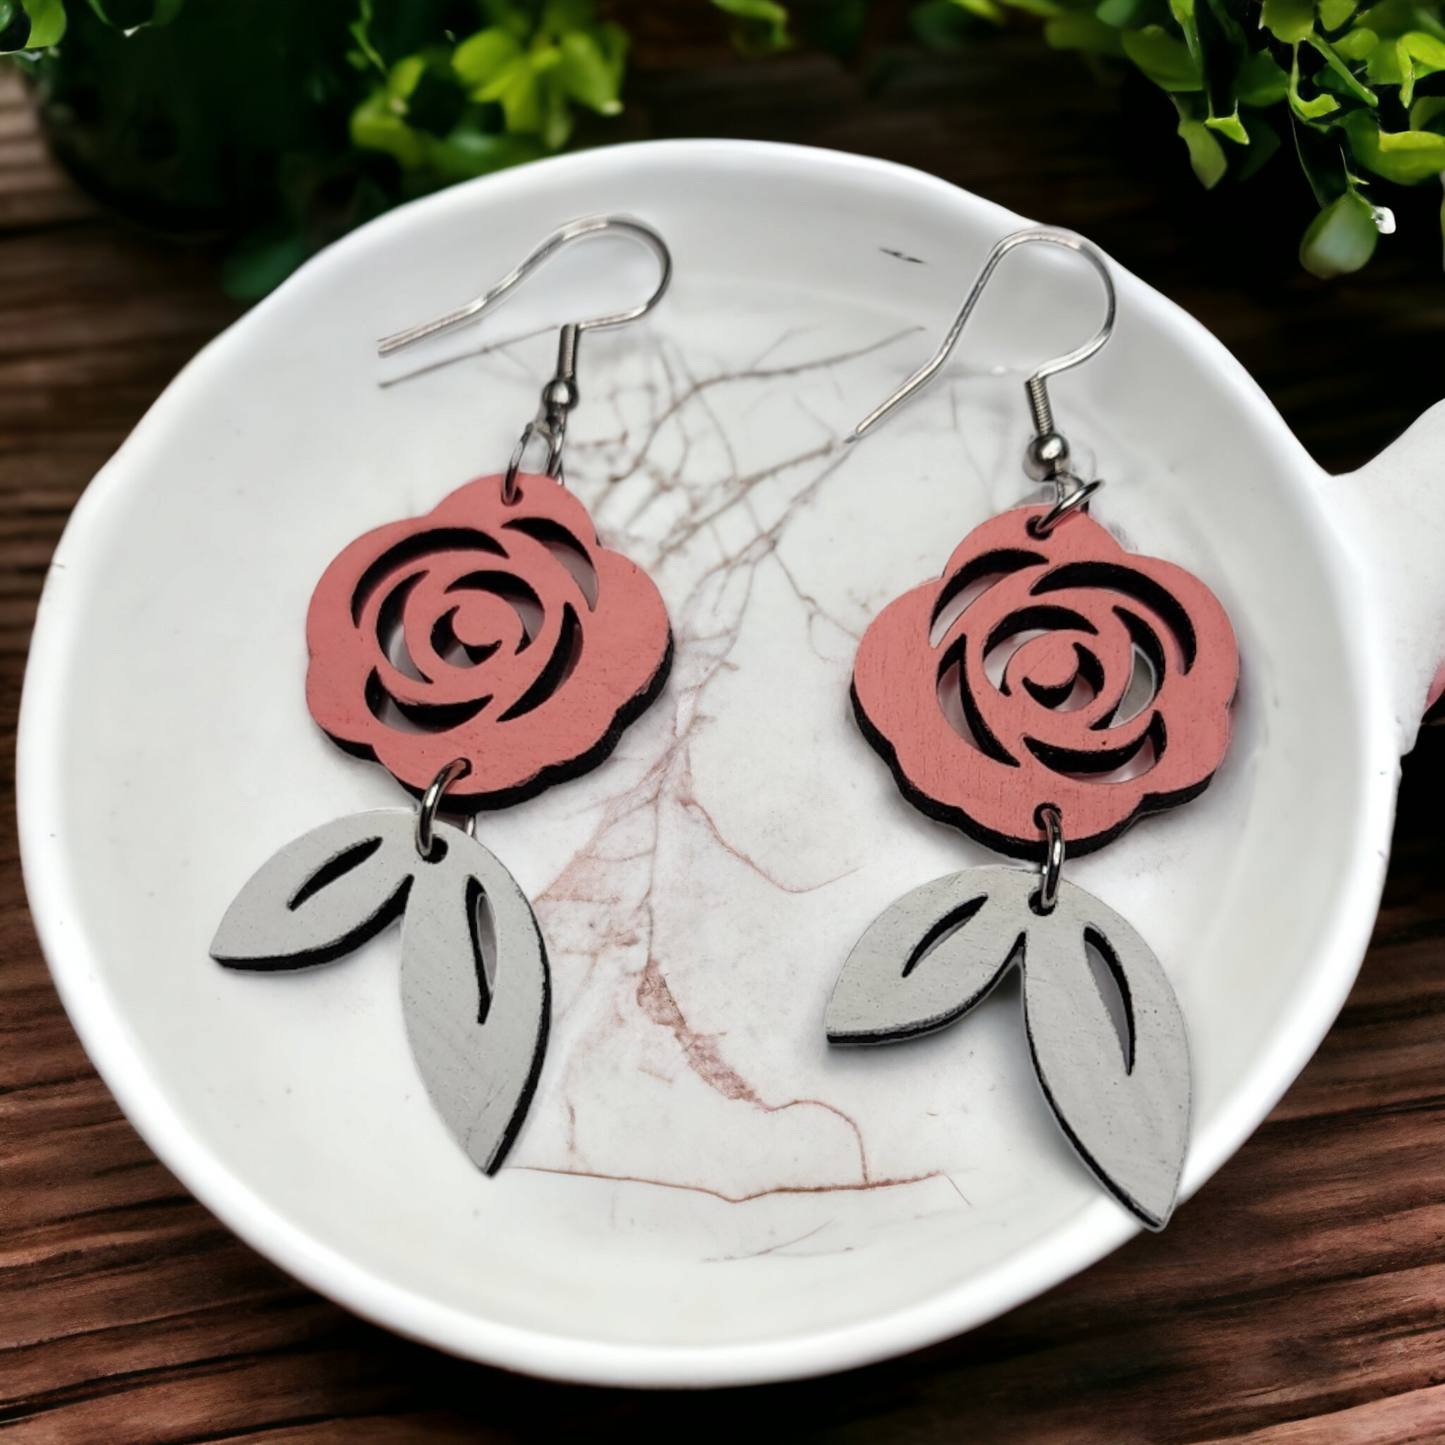 Rose Flower Dangle Earring Stainless Steel Hooks